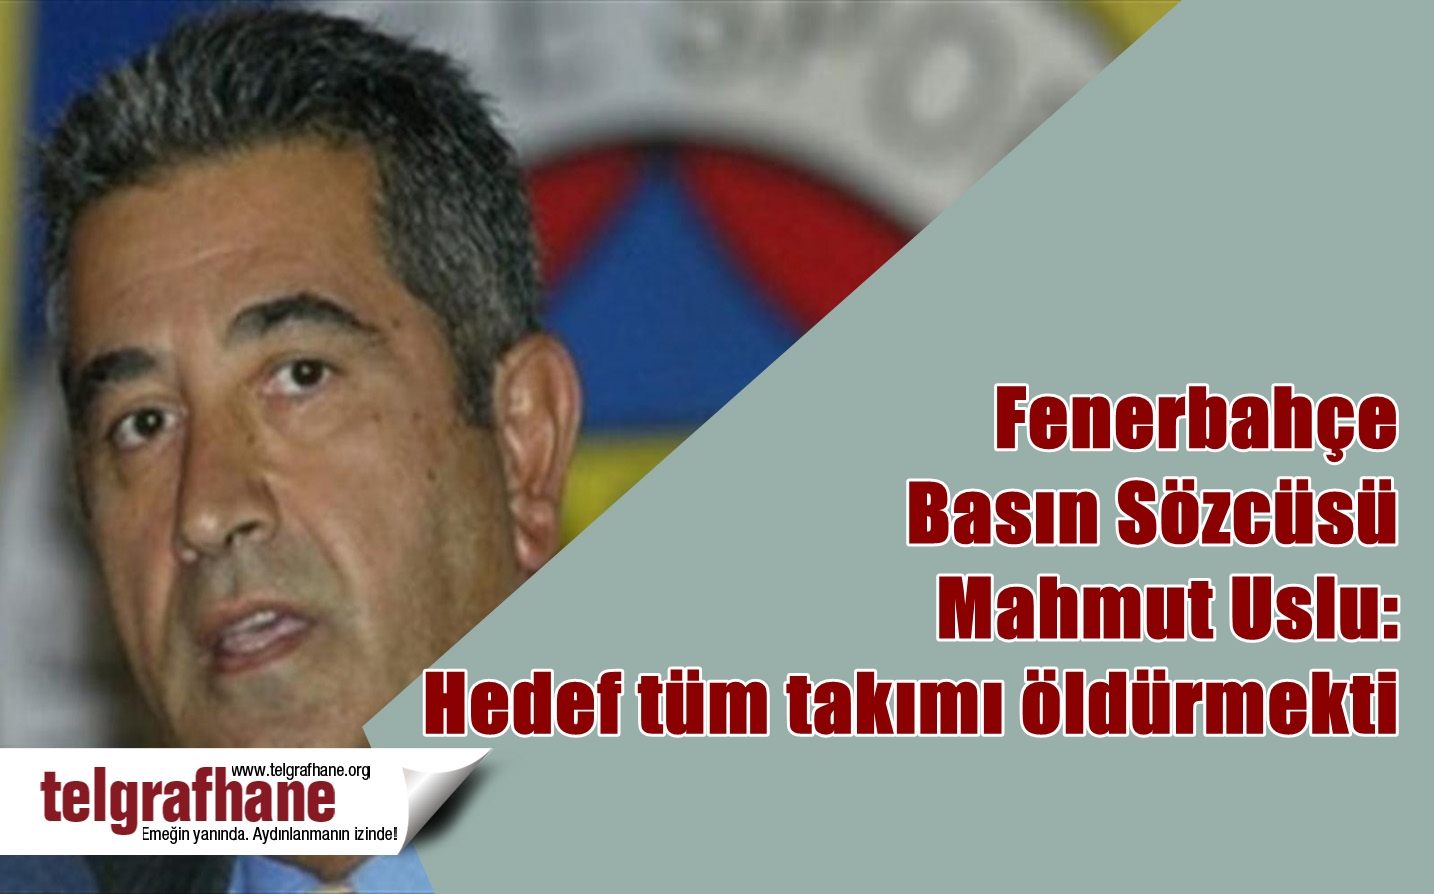 Fenerbahçe Basın Sözcüsü Mahmut Uslu: Hedef tüm takımı öldürmekti